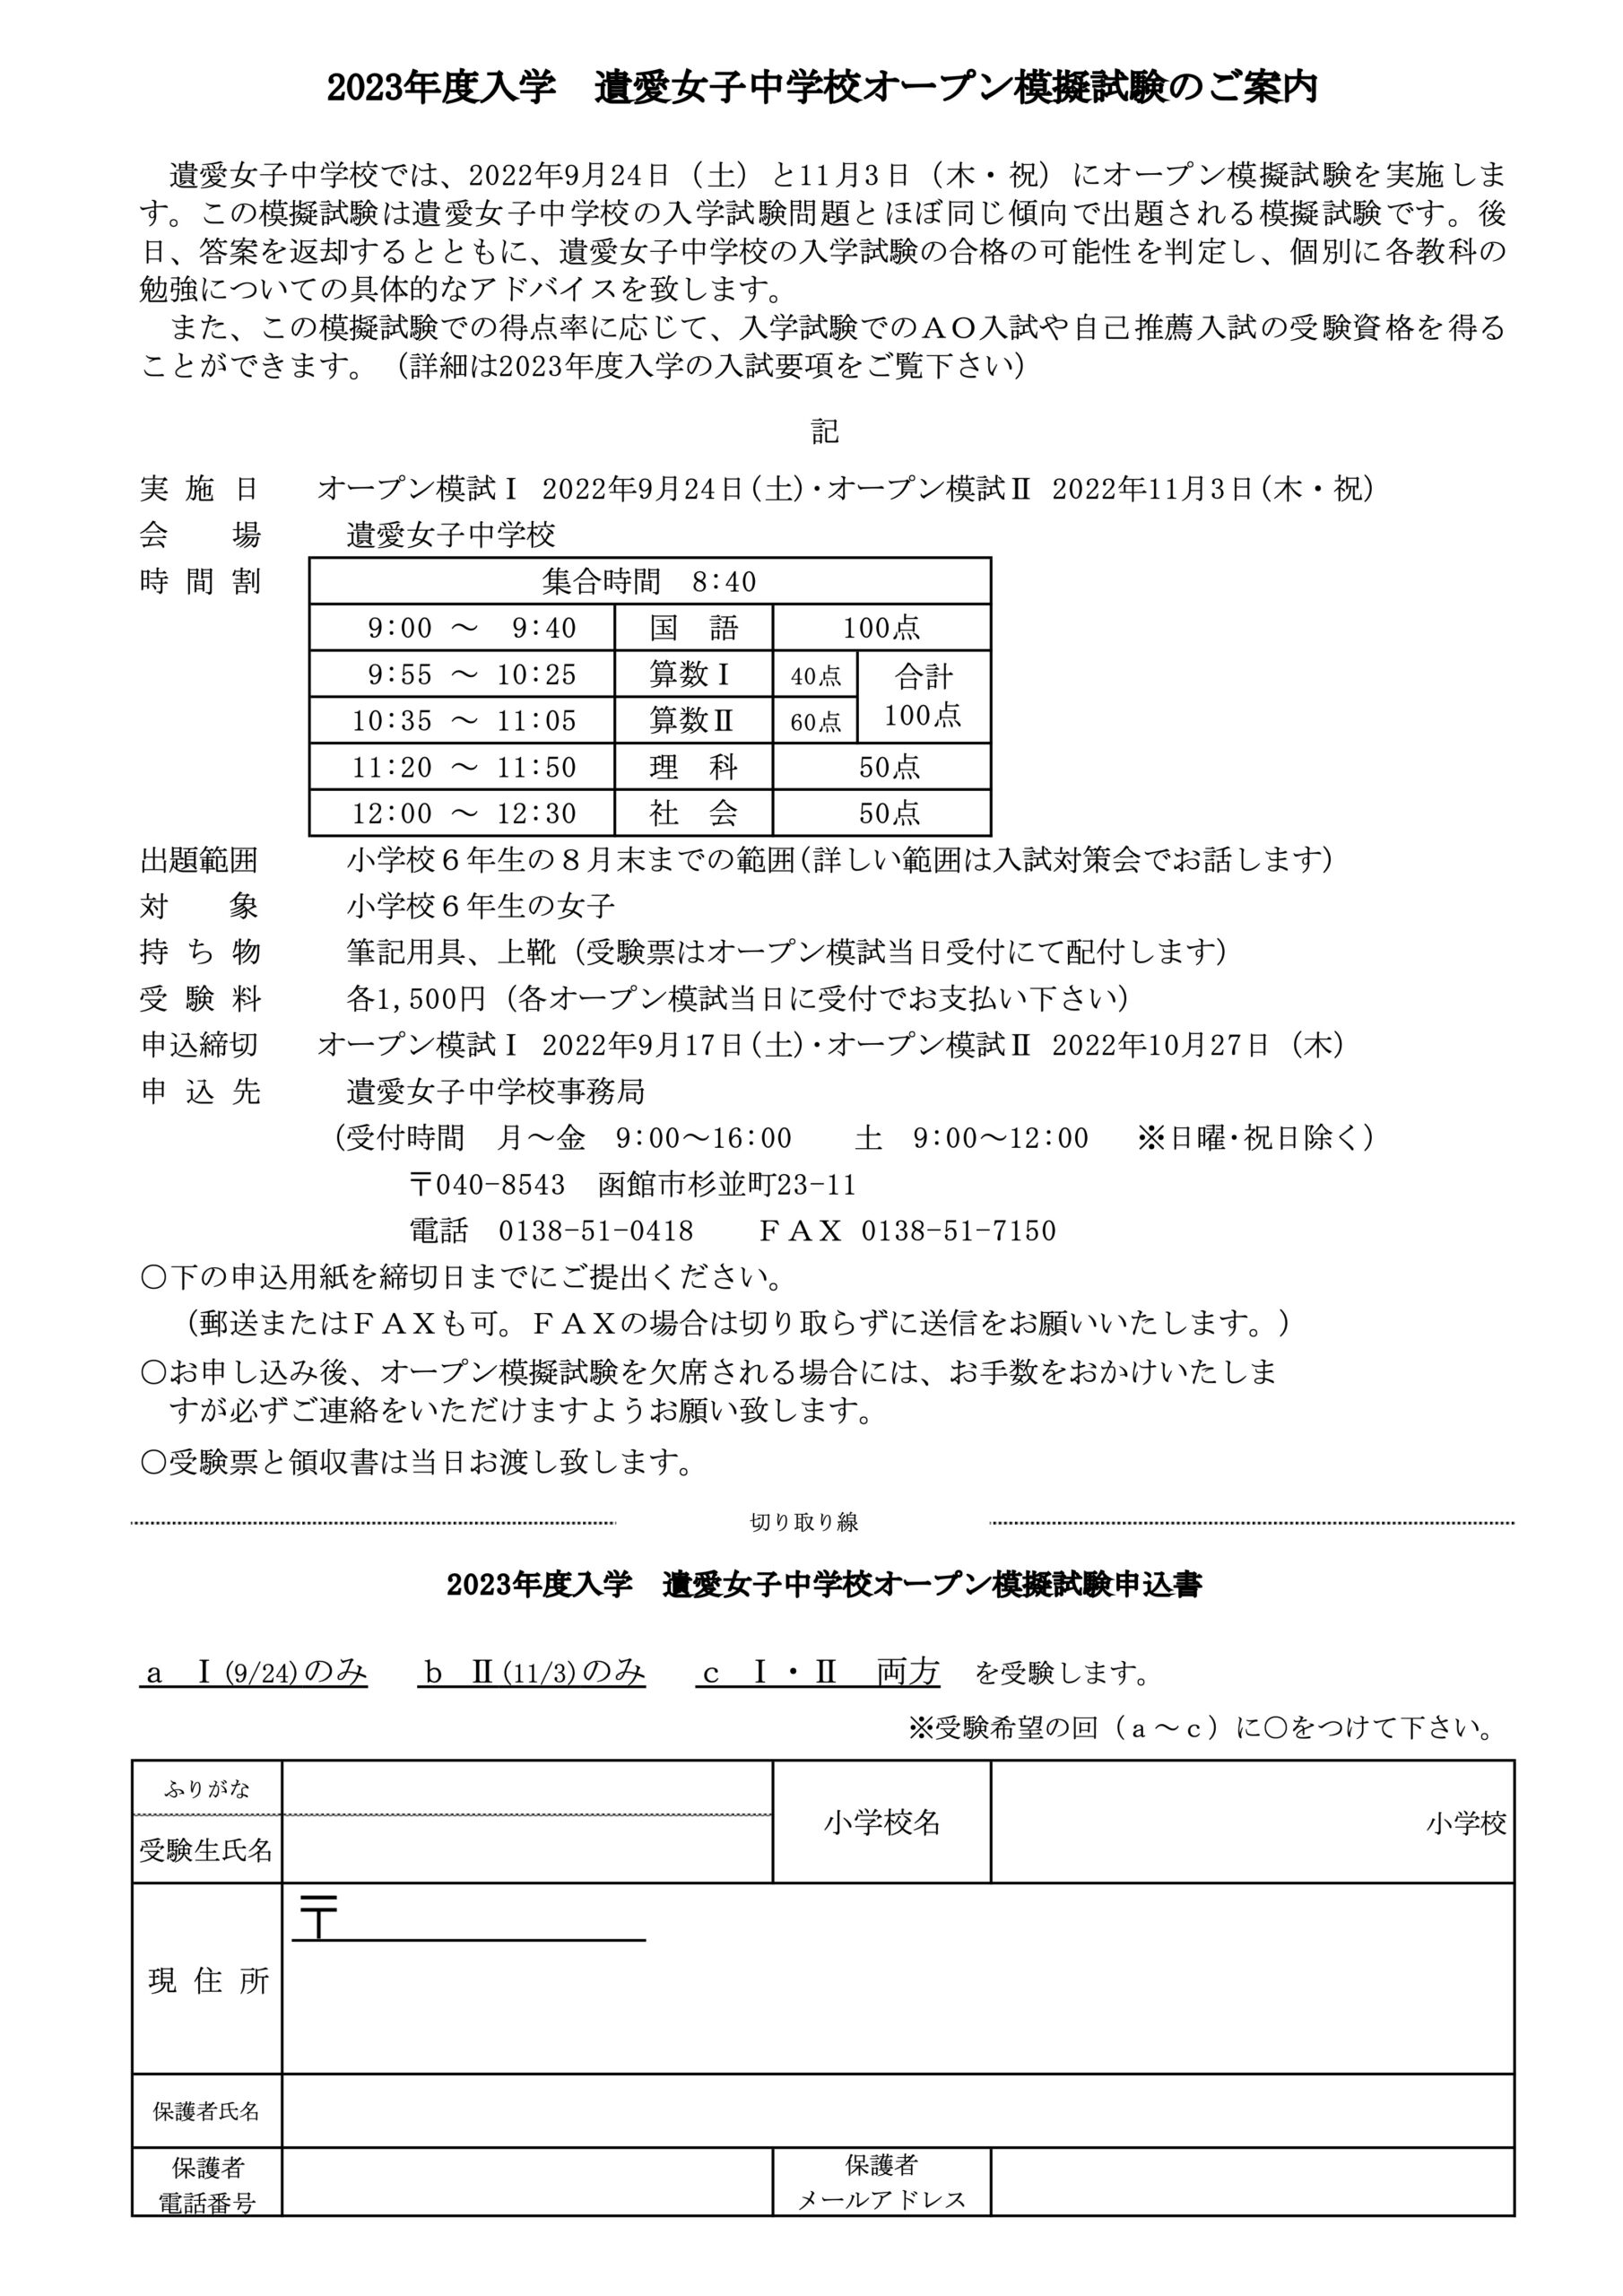 11月3日(木・祝)遺愛女子中学校『オープン模擬試験Ⅱ』を実施します。